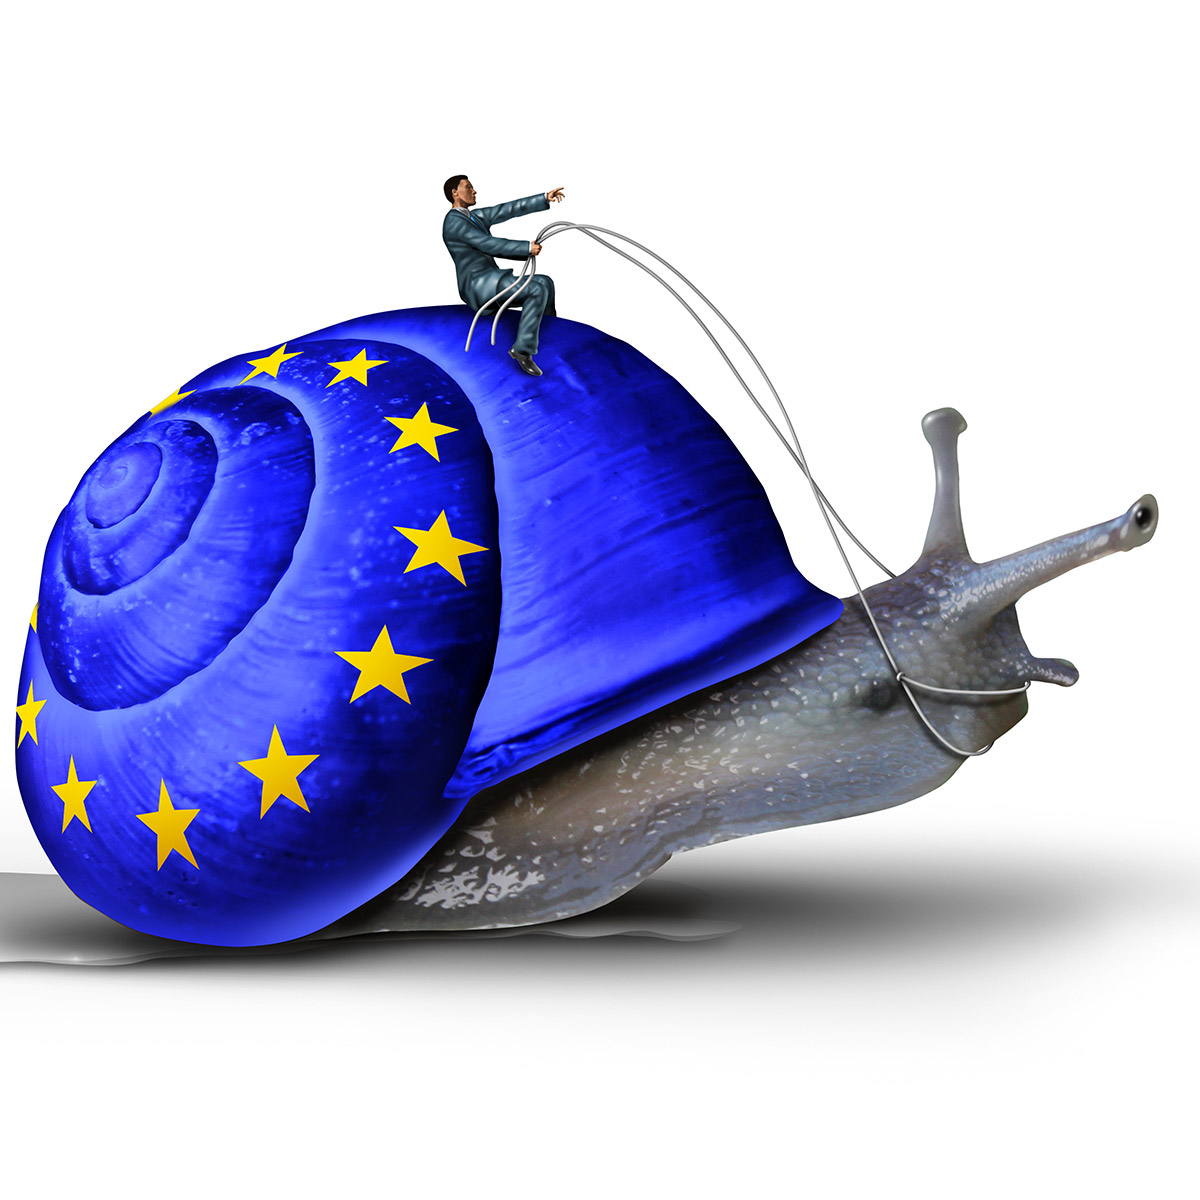 Mann reitet eine Schnecke, deren Schneckenhaus die EU-Flagge ziert